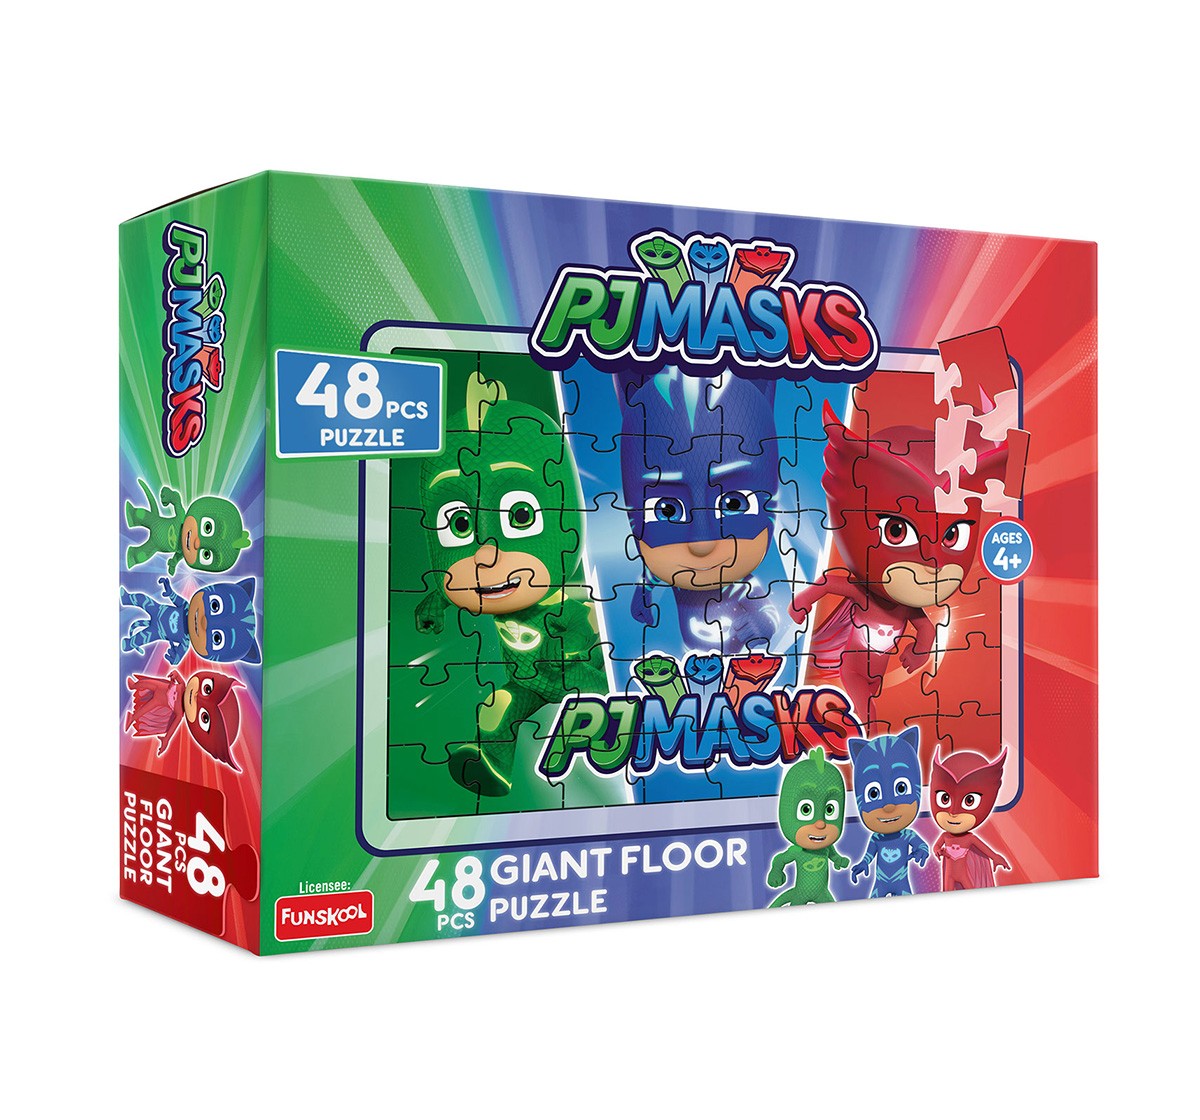 Funskool Pj Masks 48Pcs Giant Floor Puzzle 48 Pcs, 2Y+ (Multicolor)